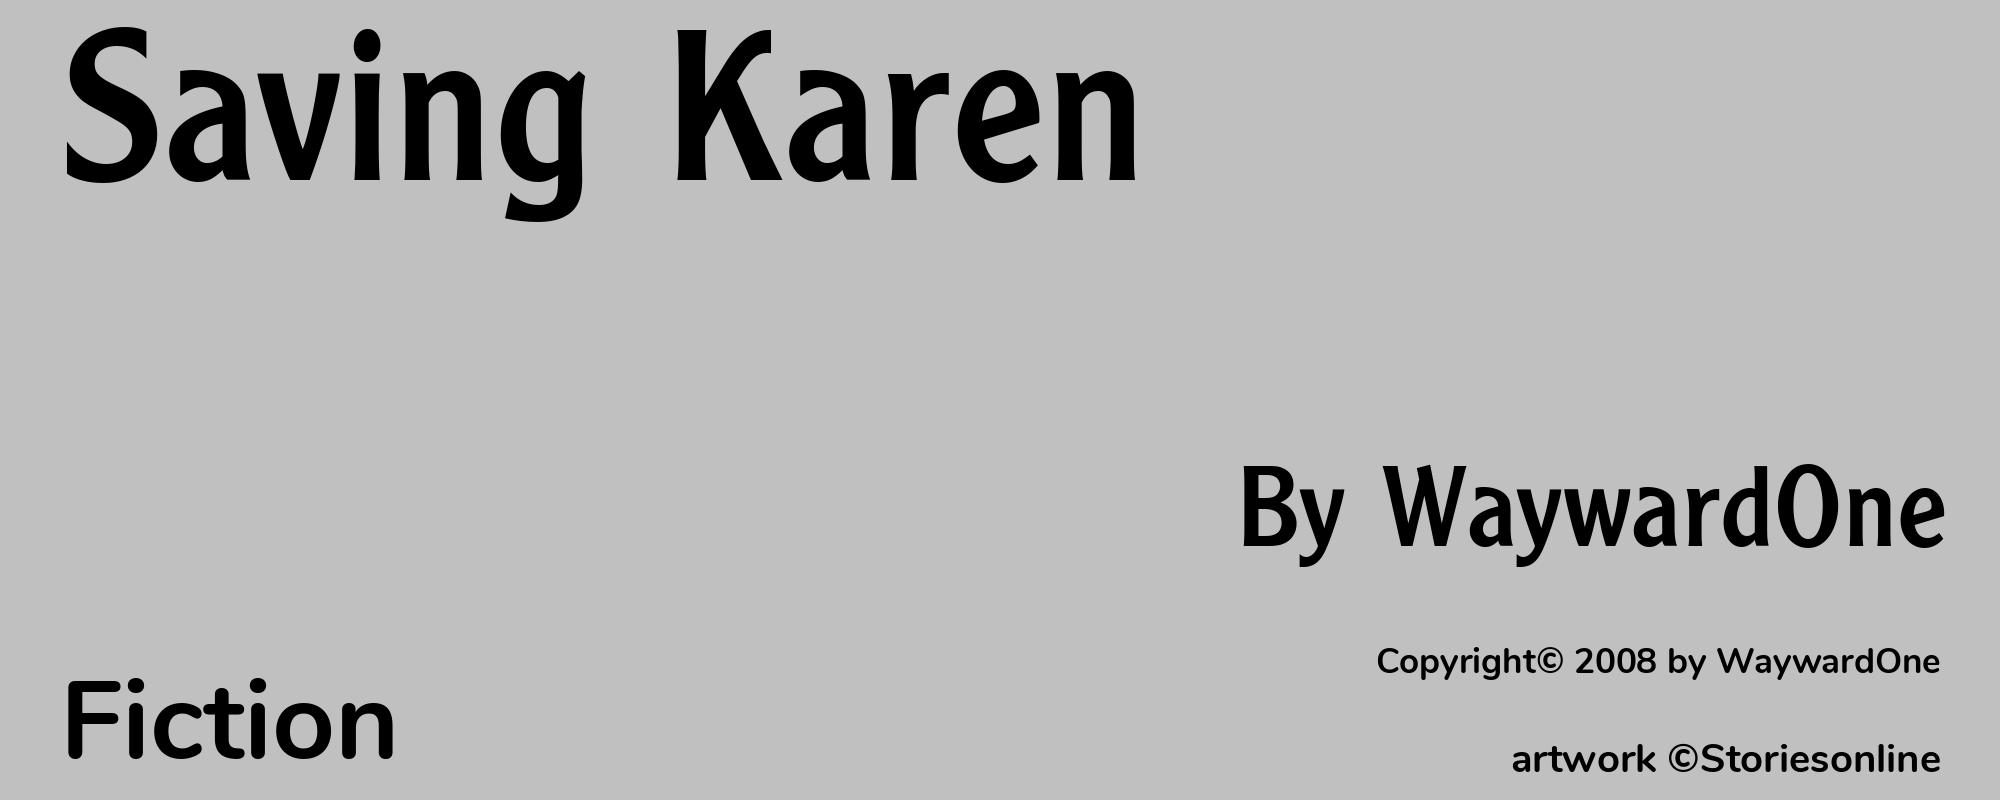 Saving Karen - Cover